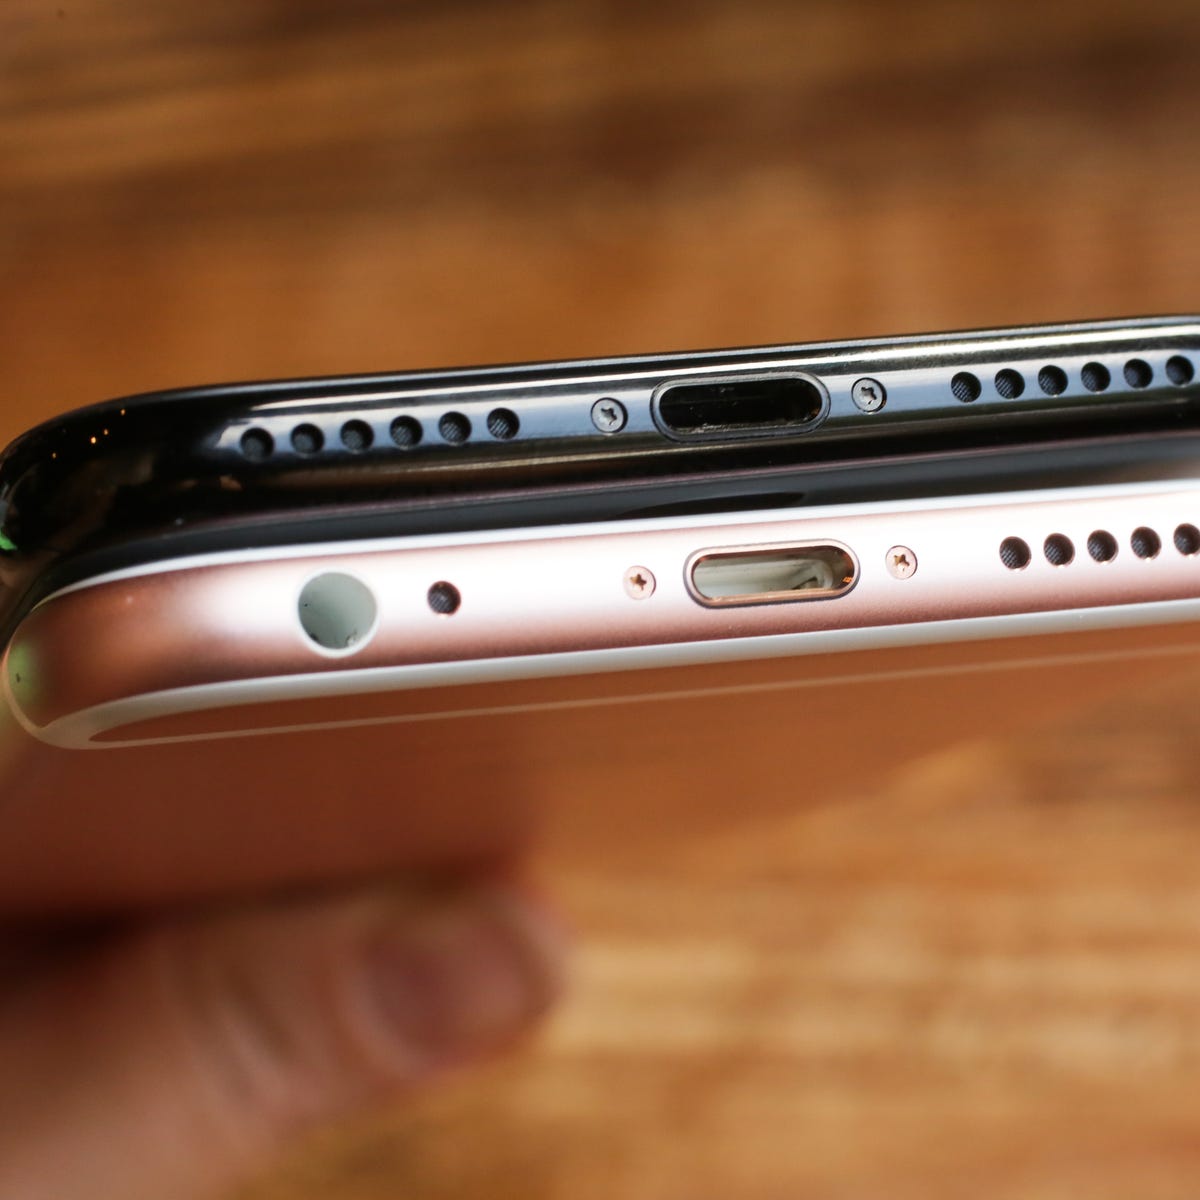 Apple kills the last iPhones with headphone jacks, nixes free adapters too